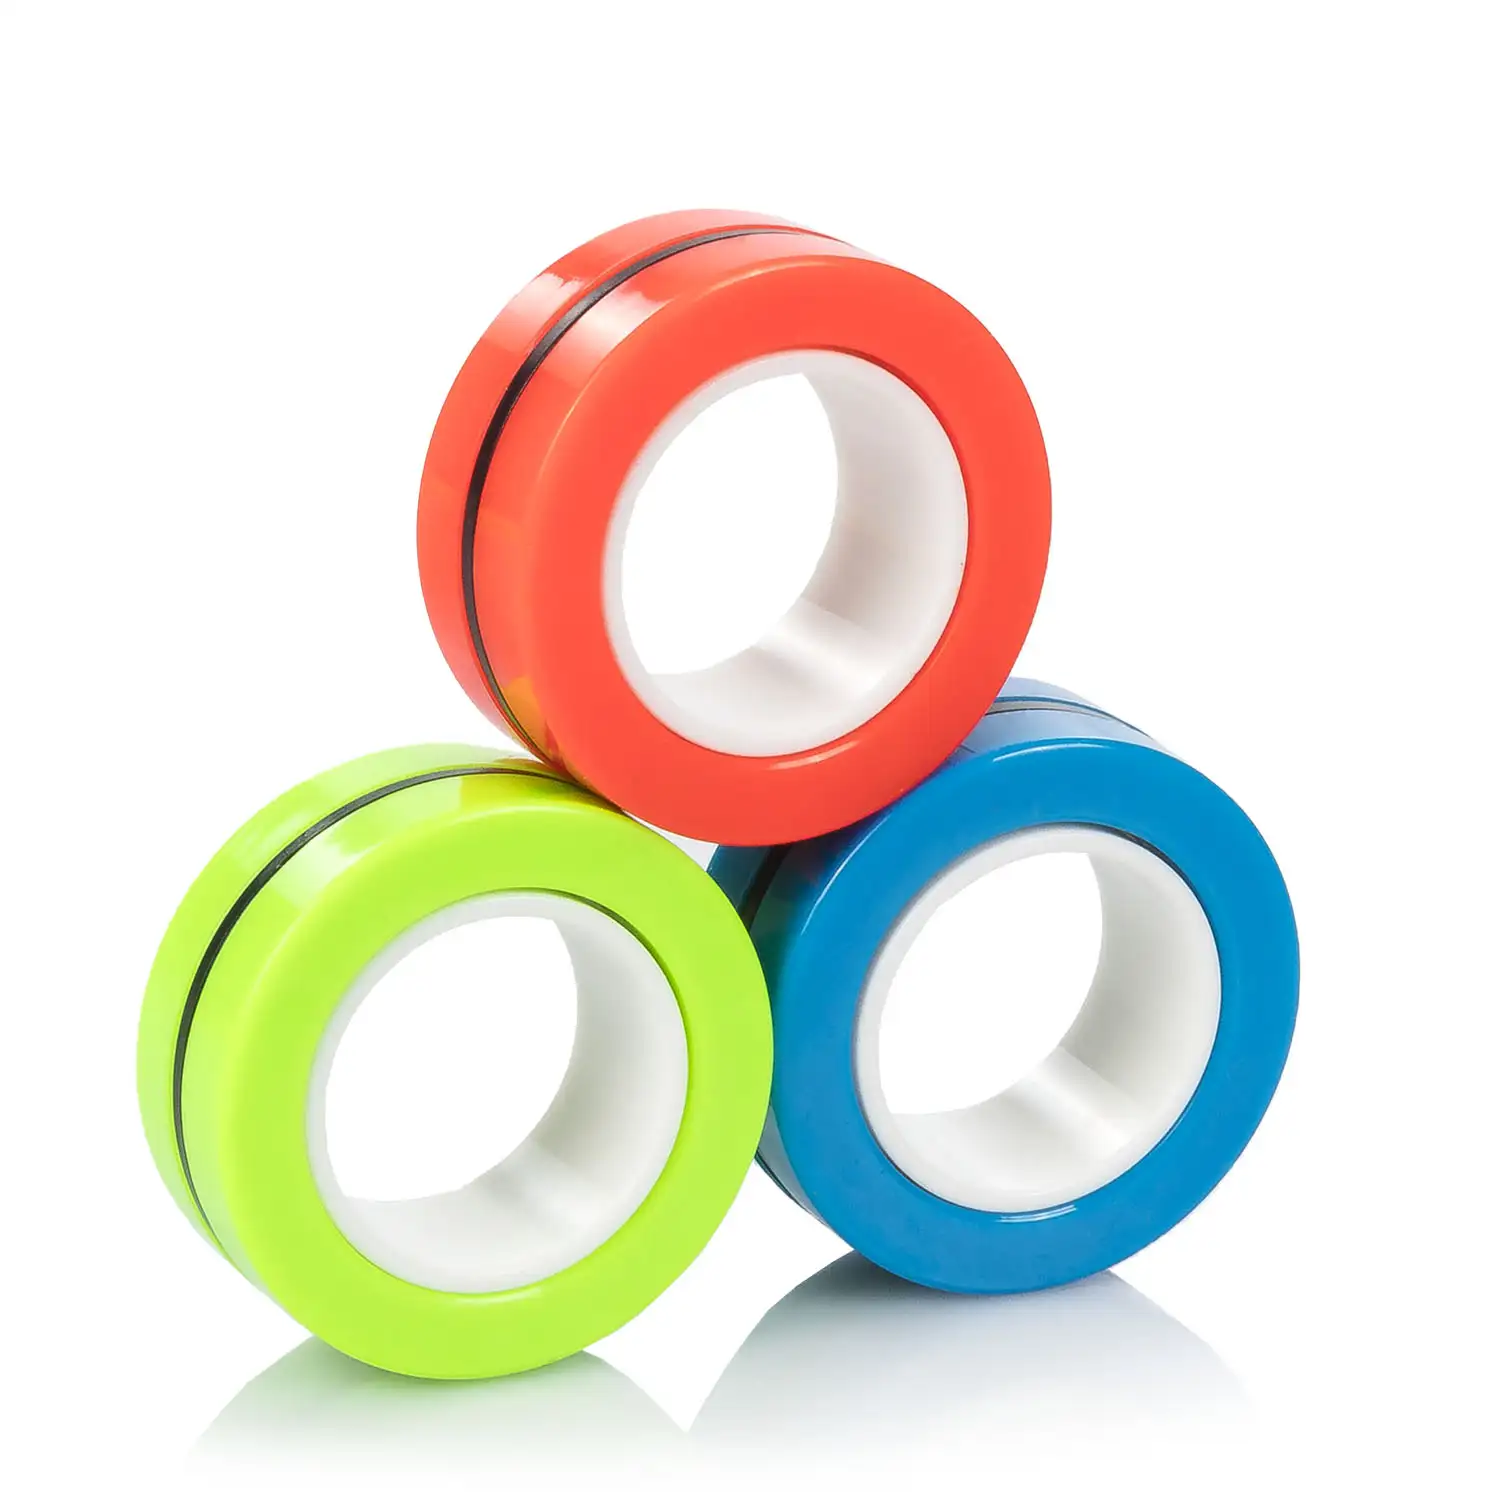 Magnetic Fidget Rings, anillos magnéticos multicolor. Juguete antiestrés, ansiedad, concentración.